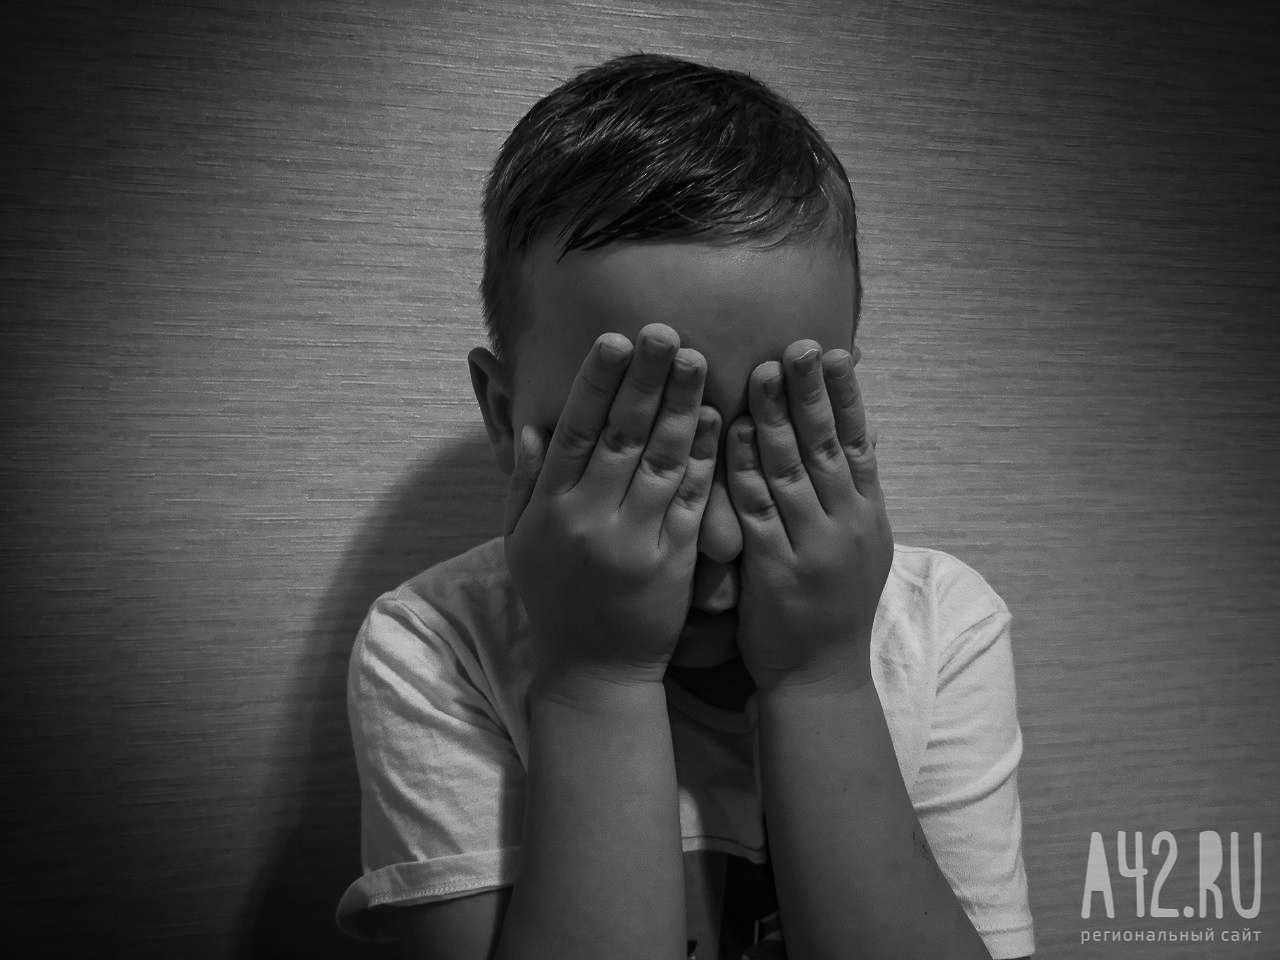 В Саратовской области ночью на остановке нашли раздетого четырёхлетнего мальчика